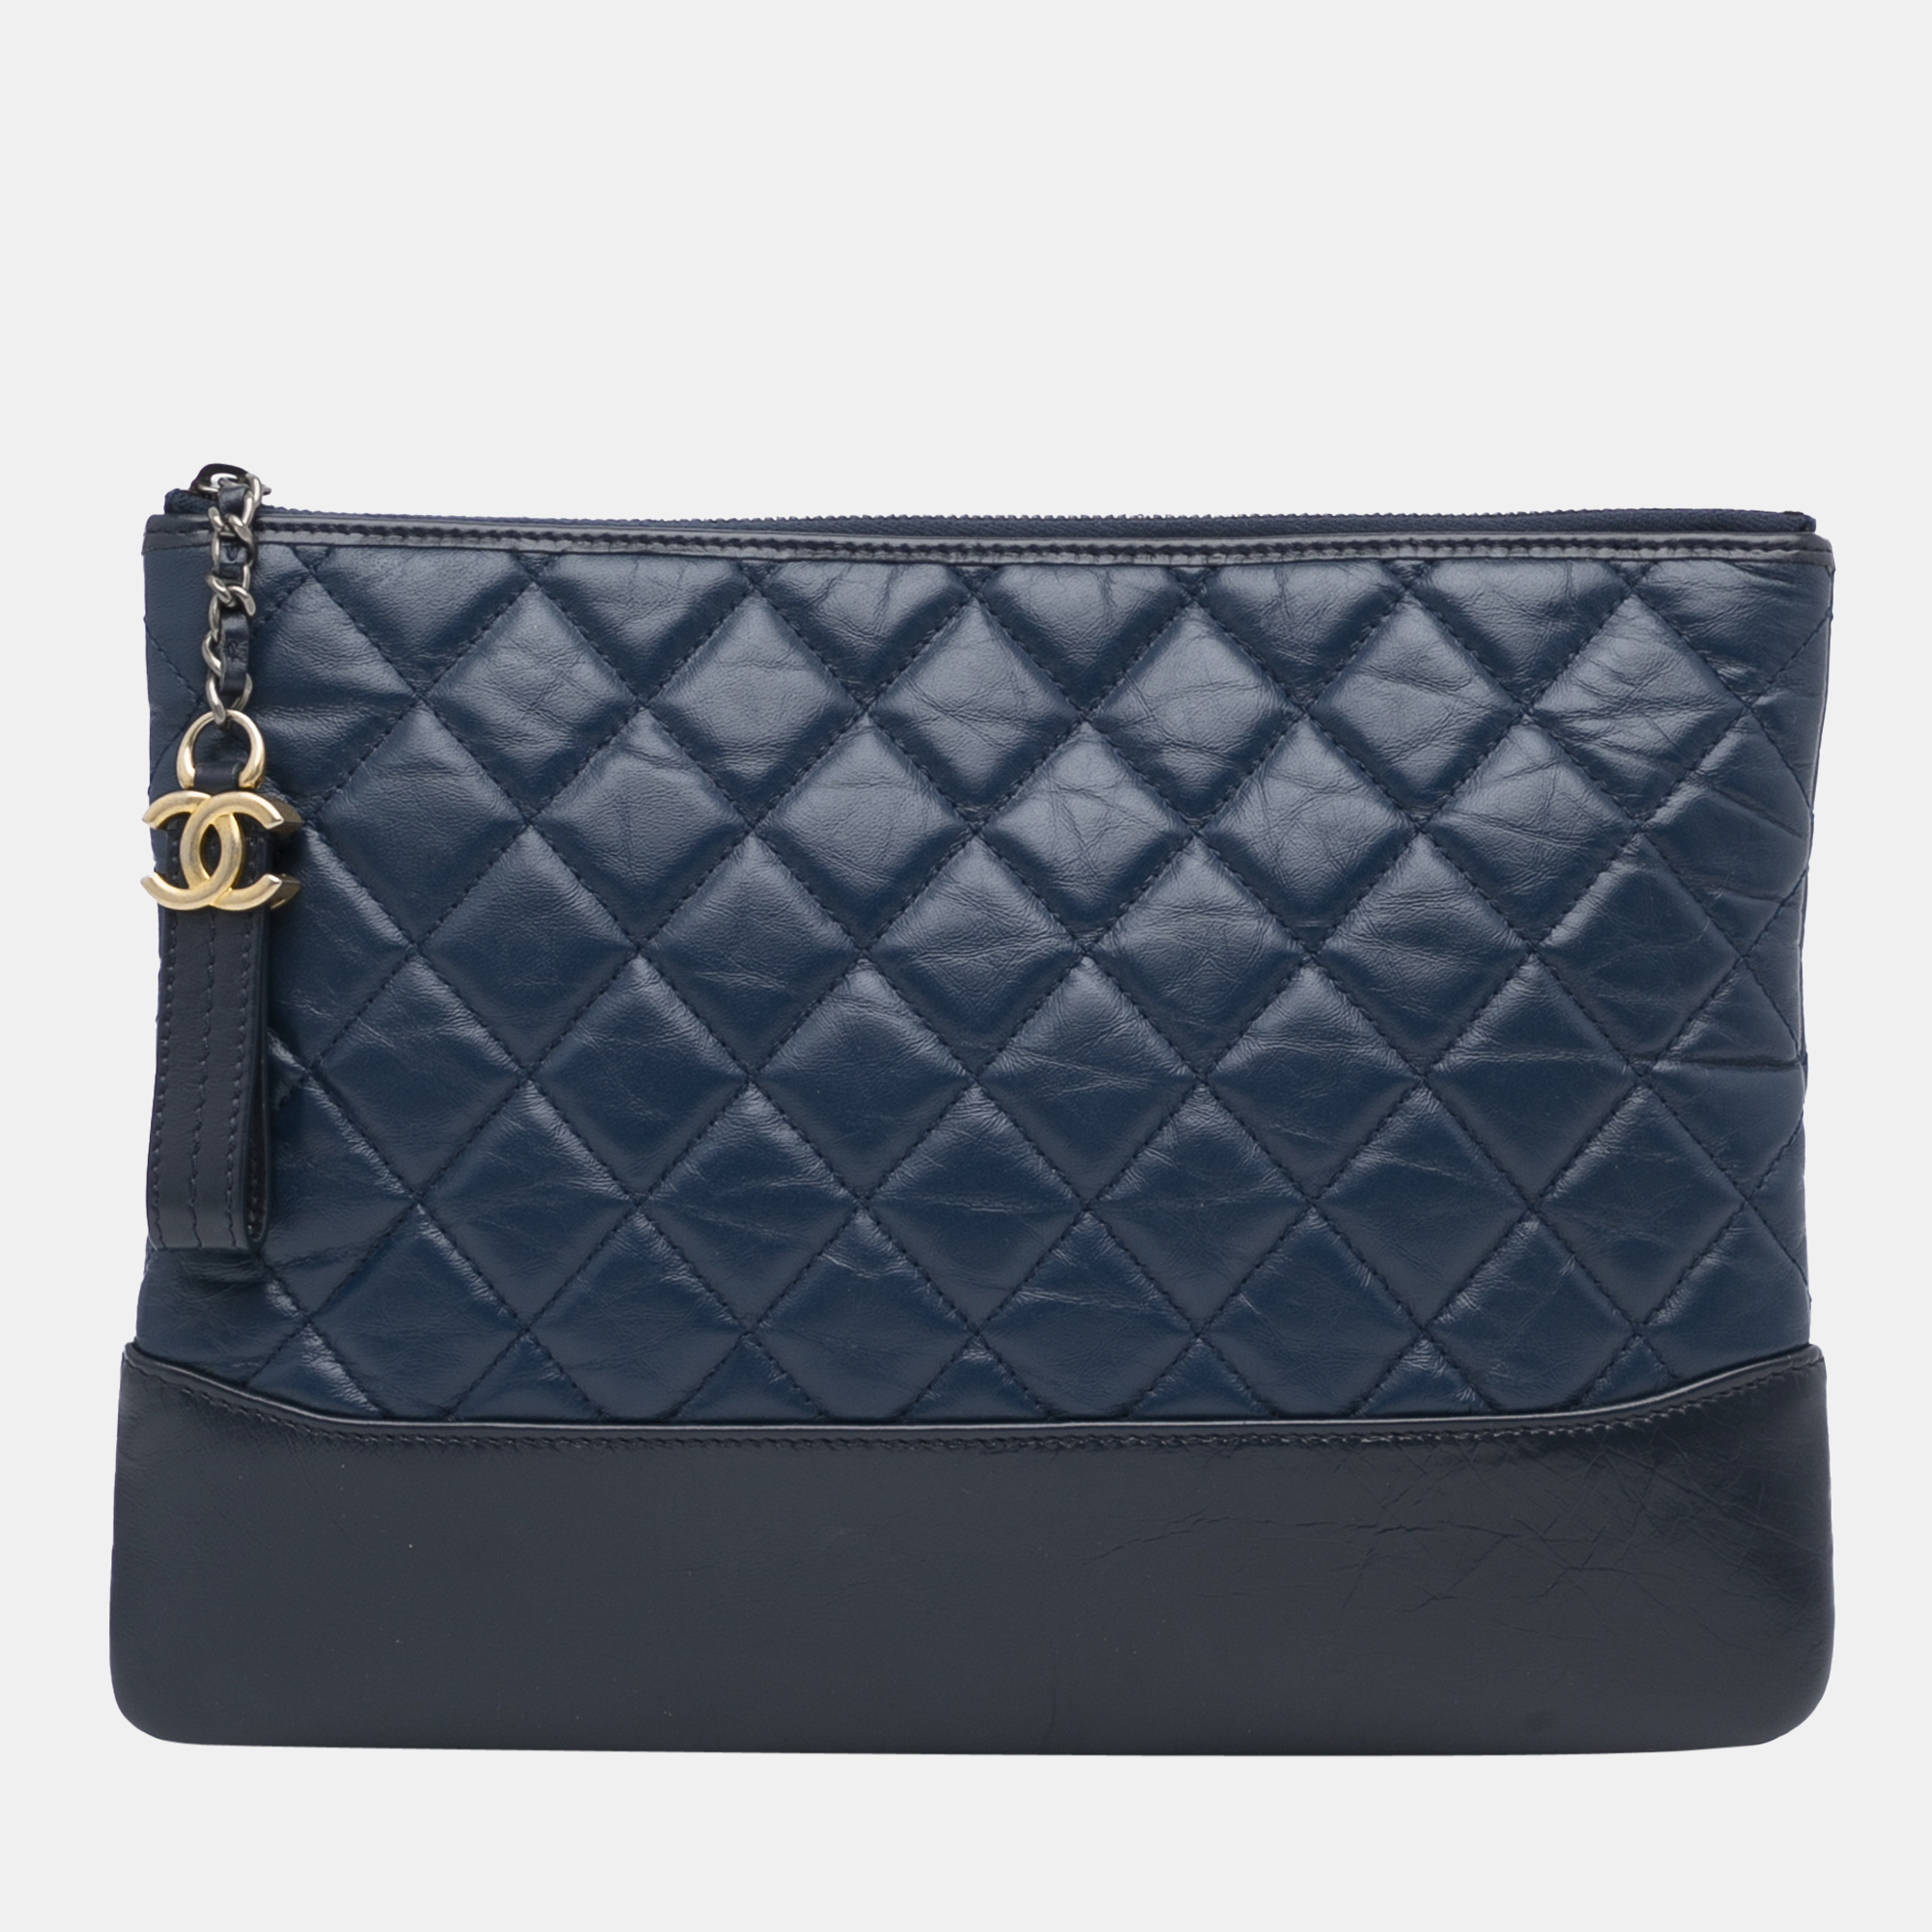 Chanel Pre-owned Gabrielle Shoulder Bag